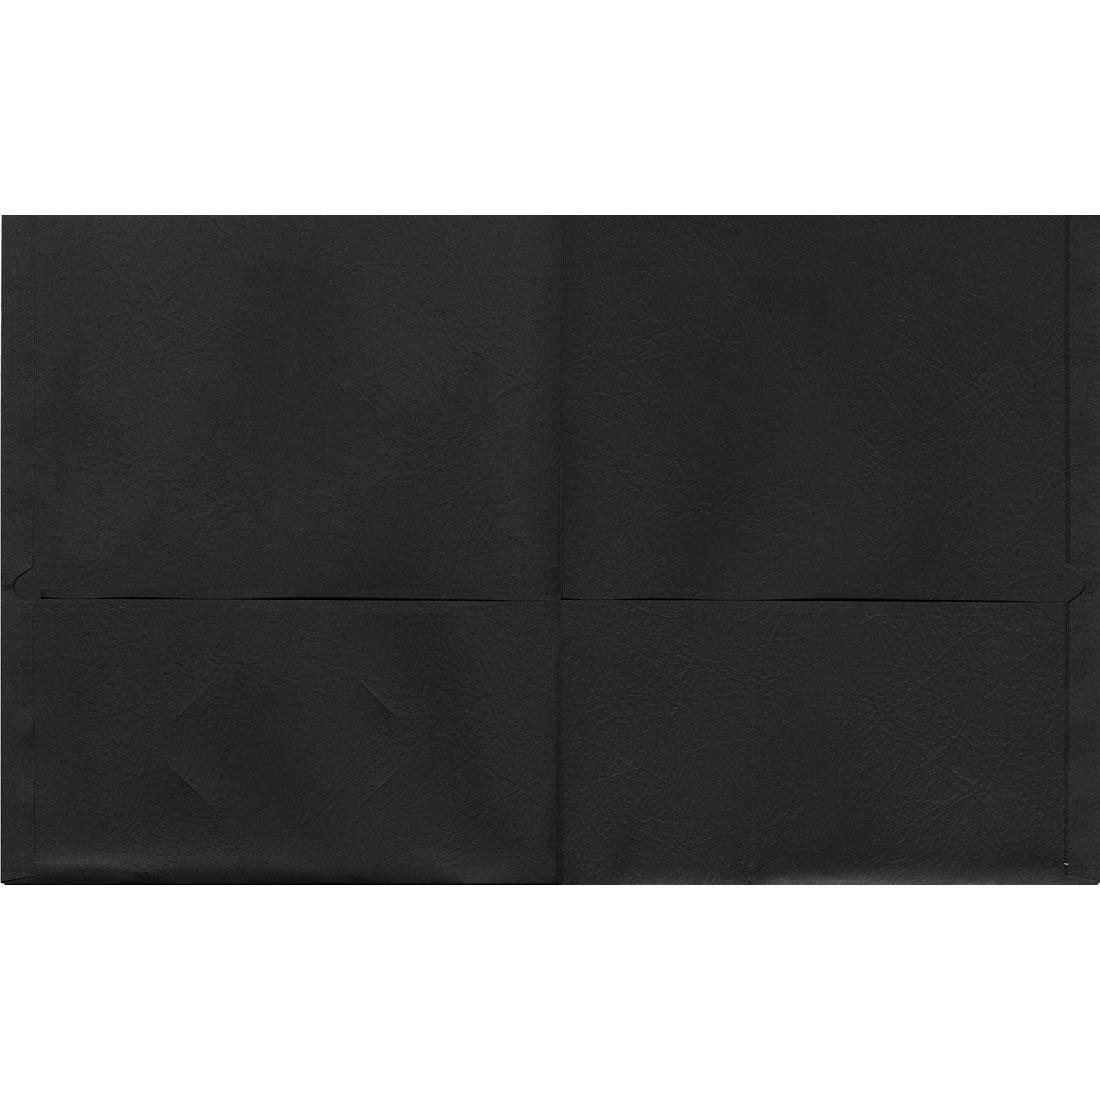 Black Oxford Twin Pocket Portfolio shown open